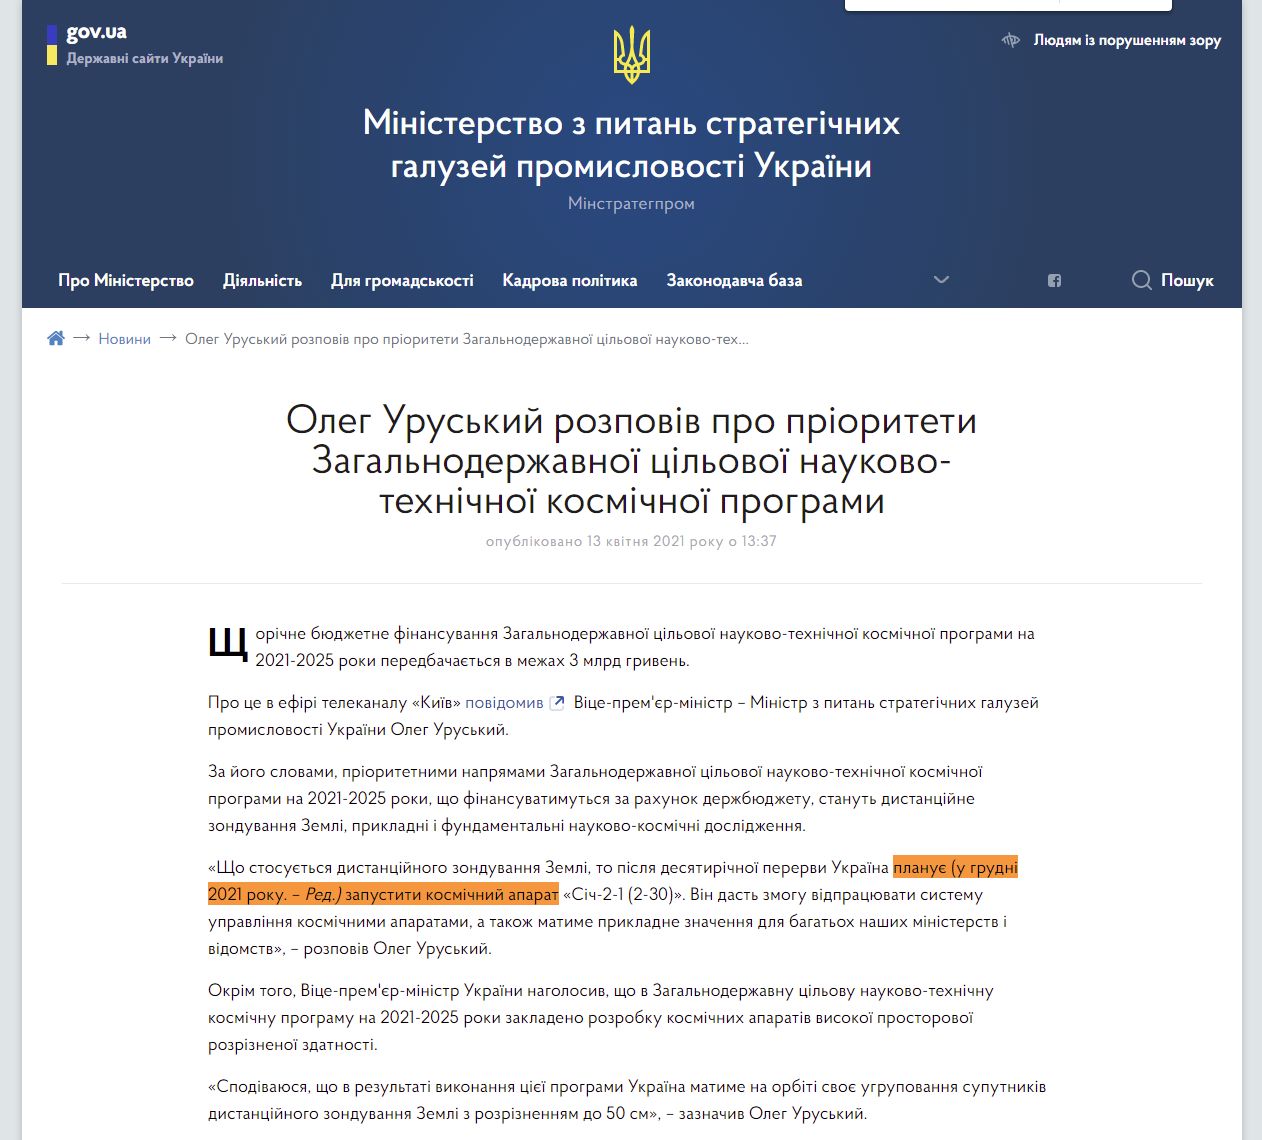 https://mspu.gov.ua/news/oleg-uruskij-rozpoviv-pro-prioriteti-zagalnoderzhavnoyi-cilovoyi-naukovo-tehnichnoyi-kosmichnoyi-programi